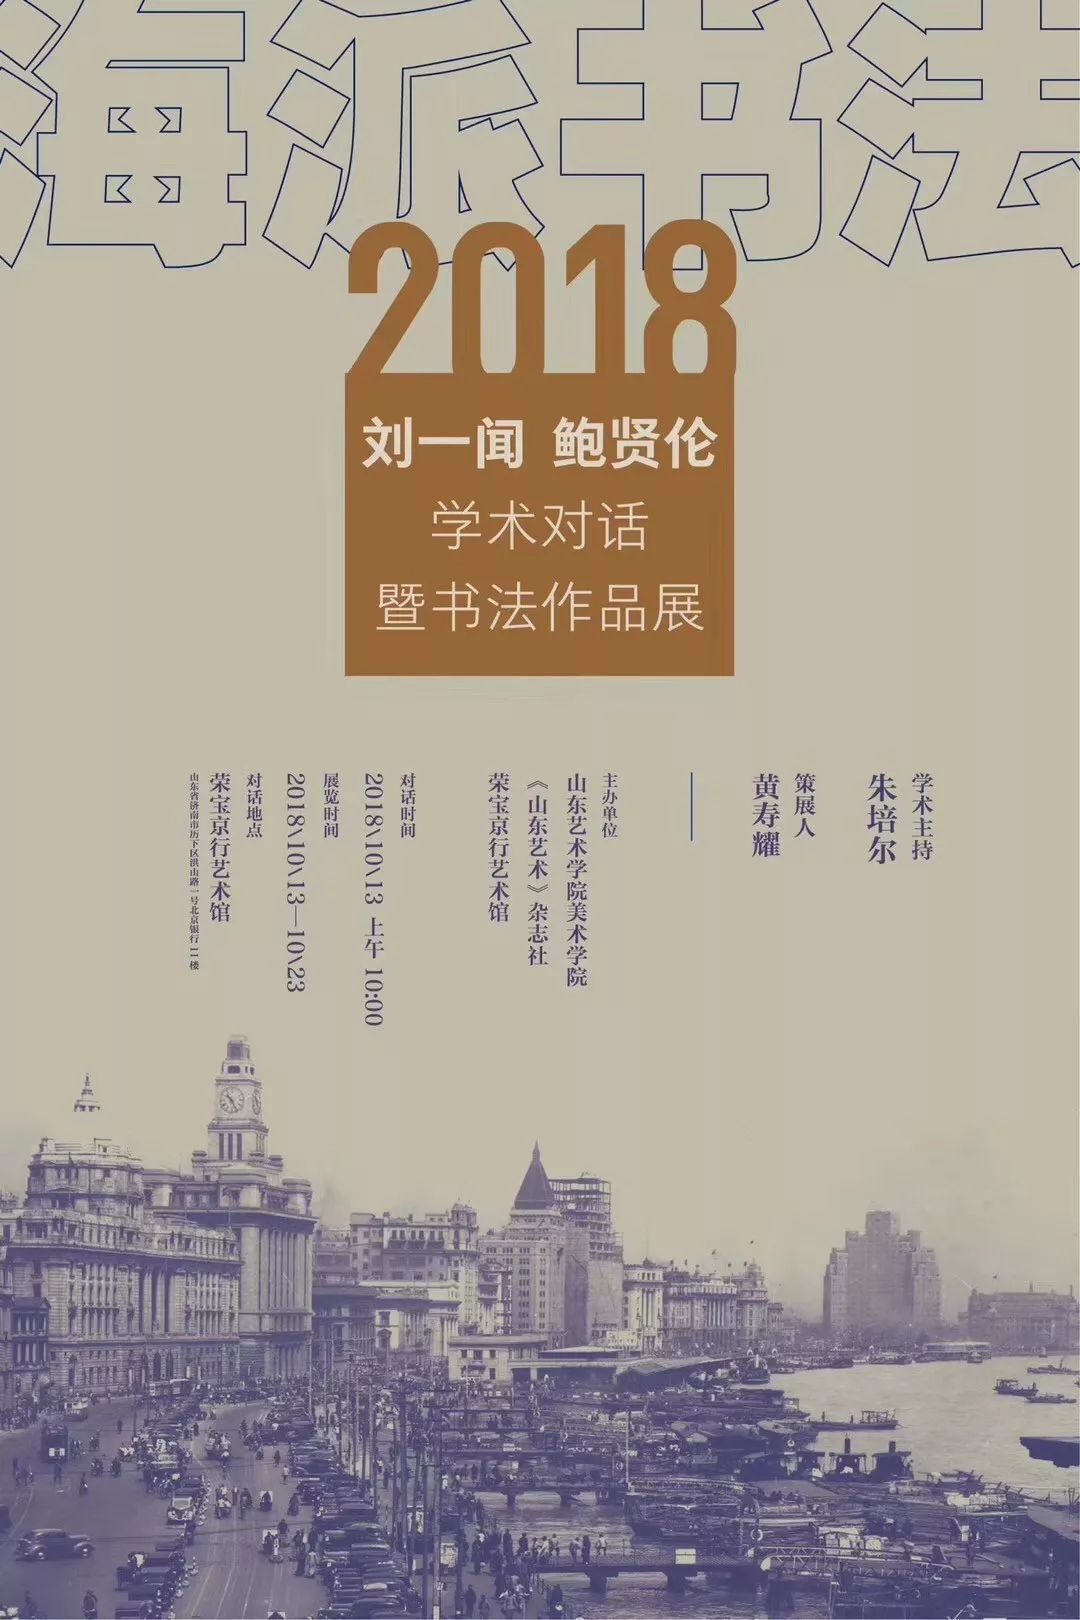 “海派书法”2018刘一闻 鲍贤伦学术对话暨书法作品展